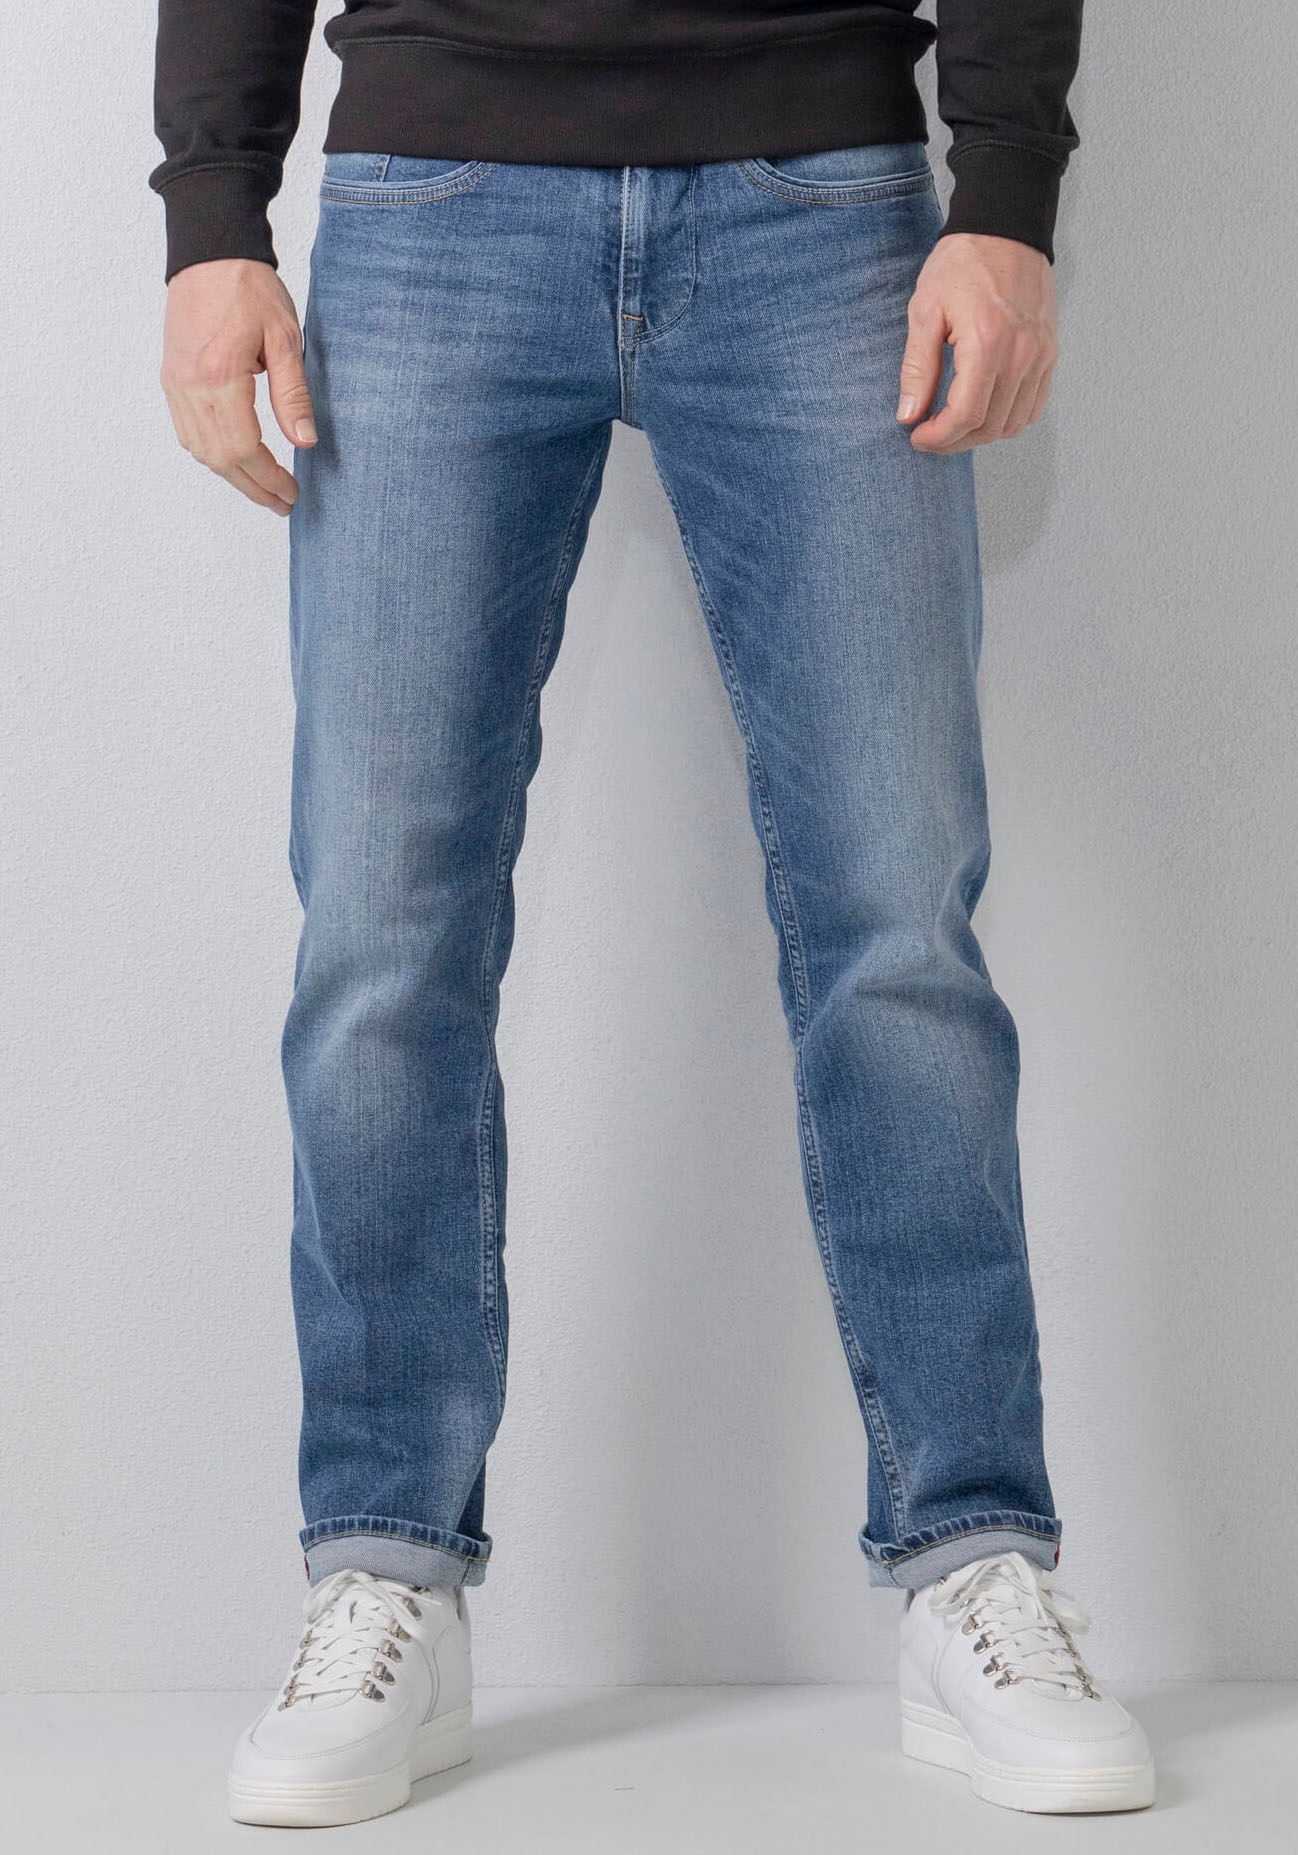 Shop im s.Oliver OTTO Waschung Online authentischer mit 5-Pocket-Jeans,